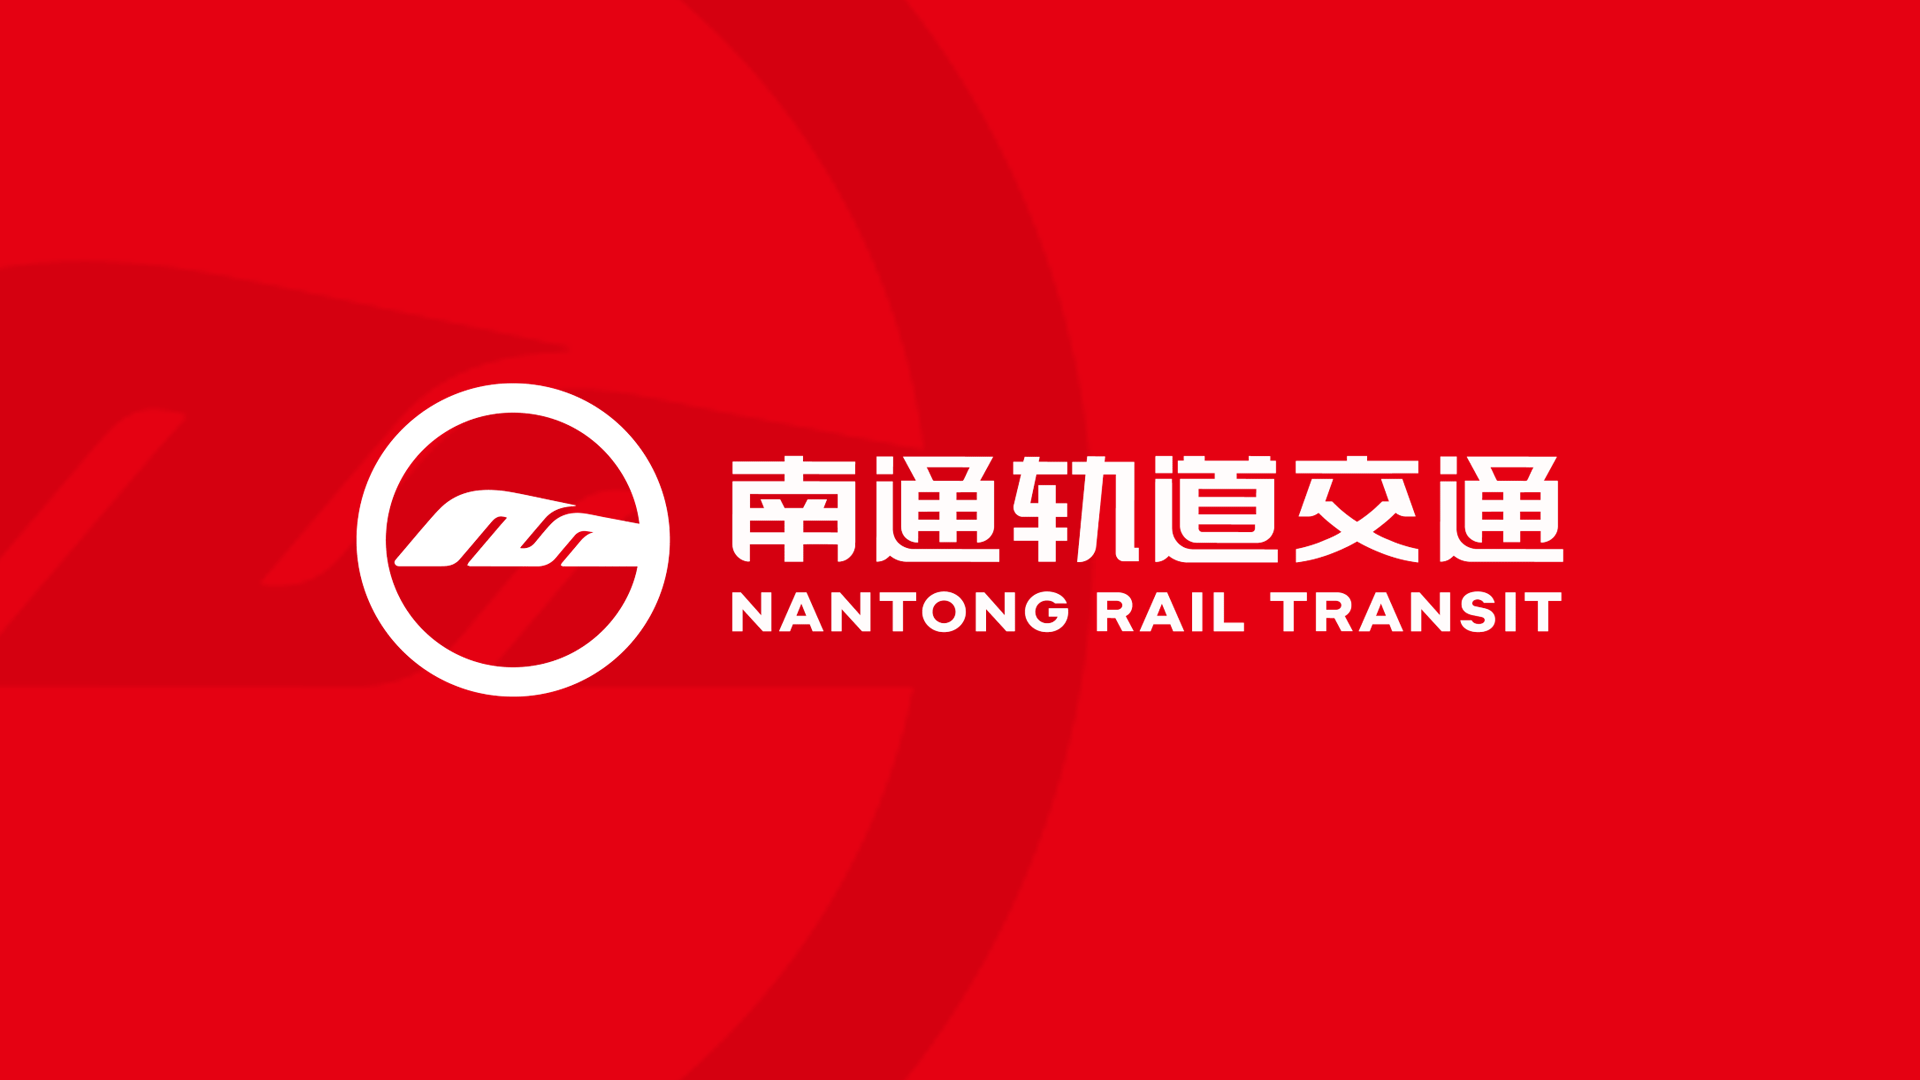 江苏南通城市轨道交通的logo